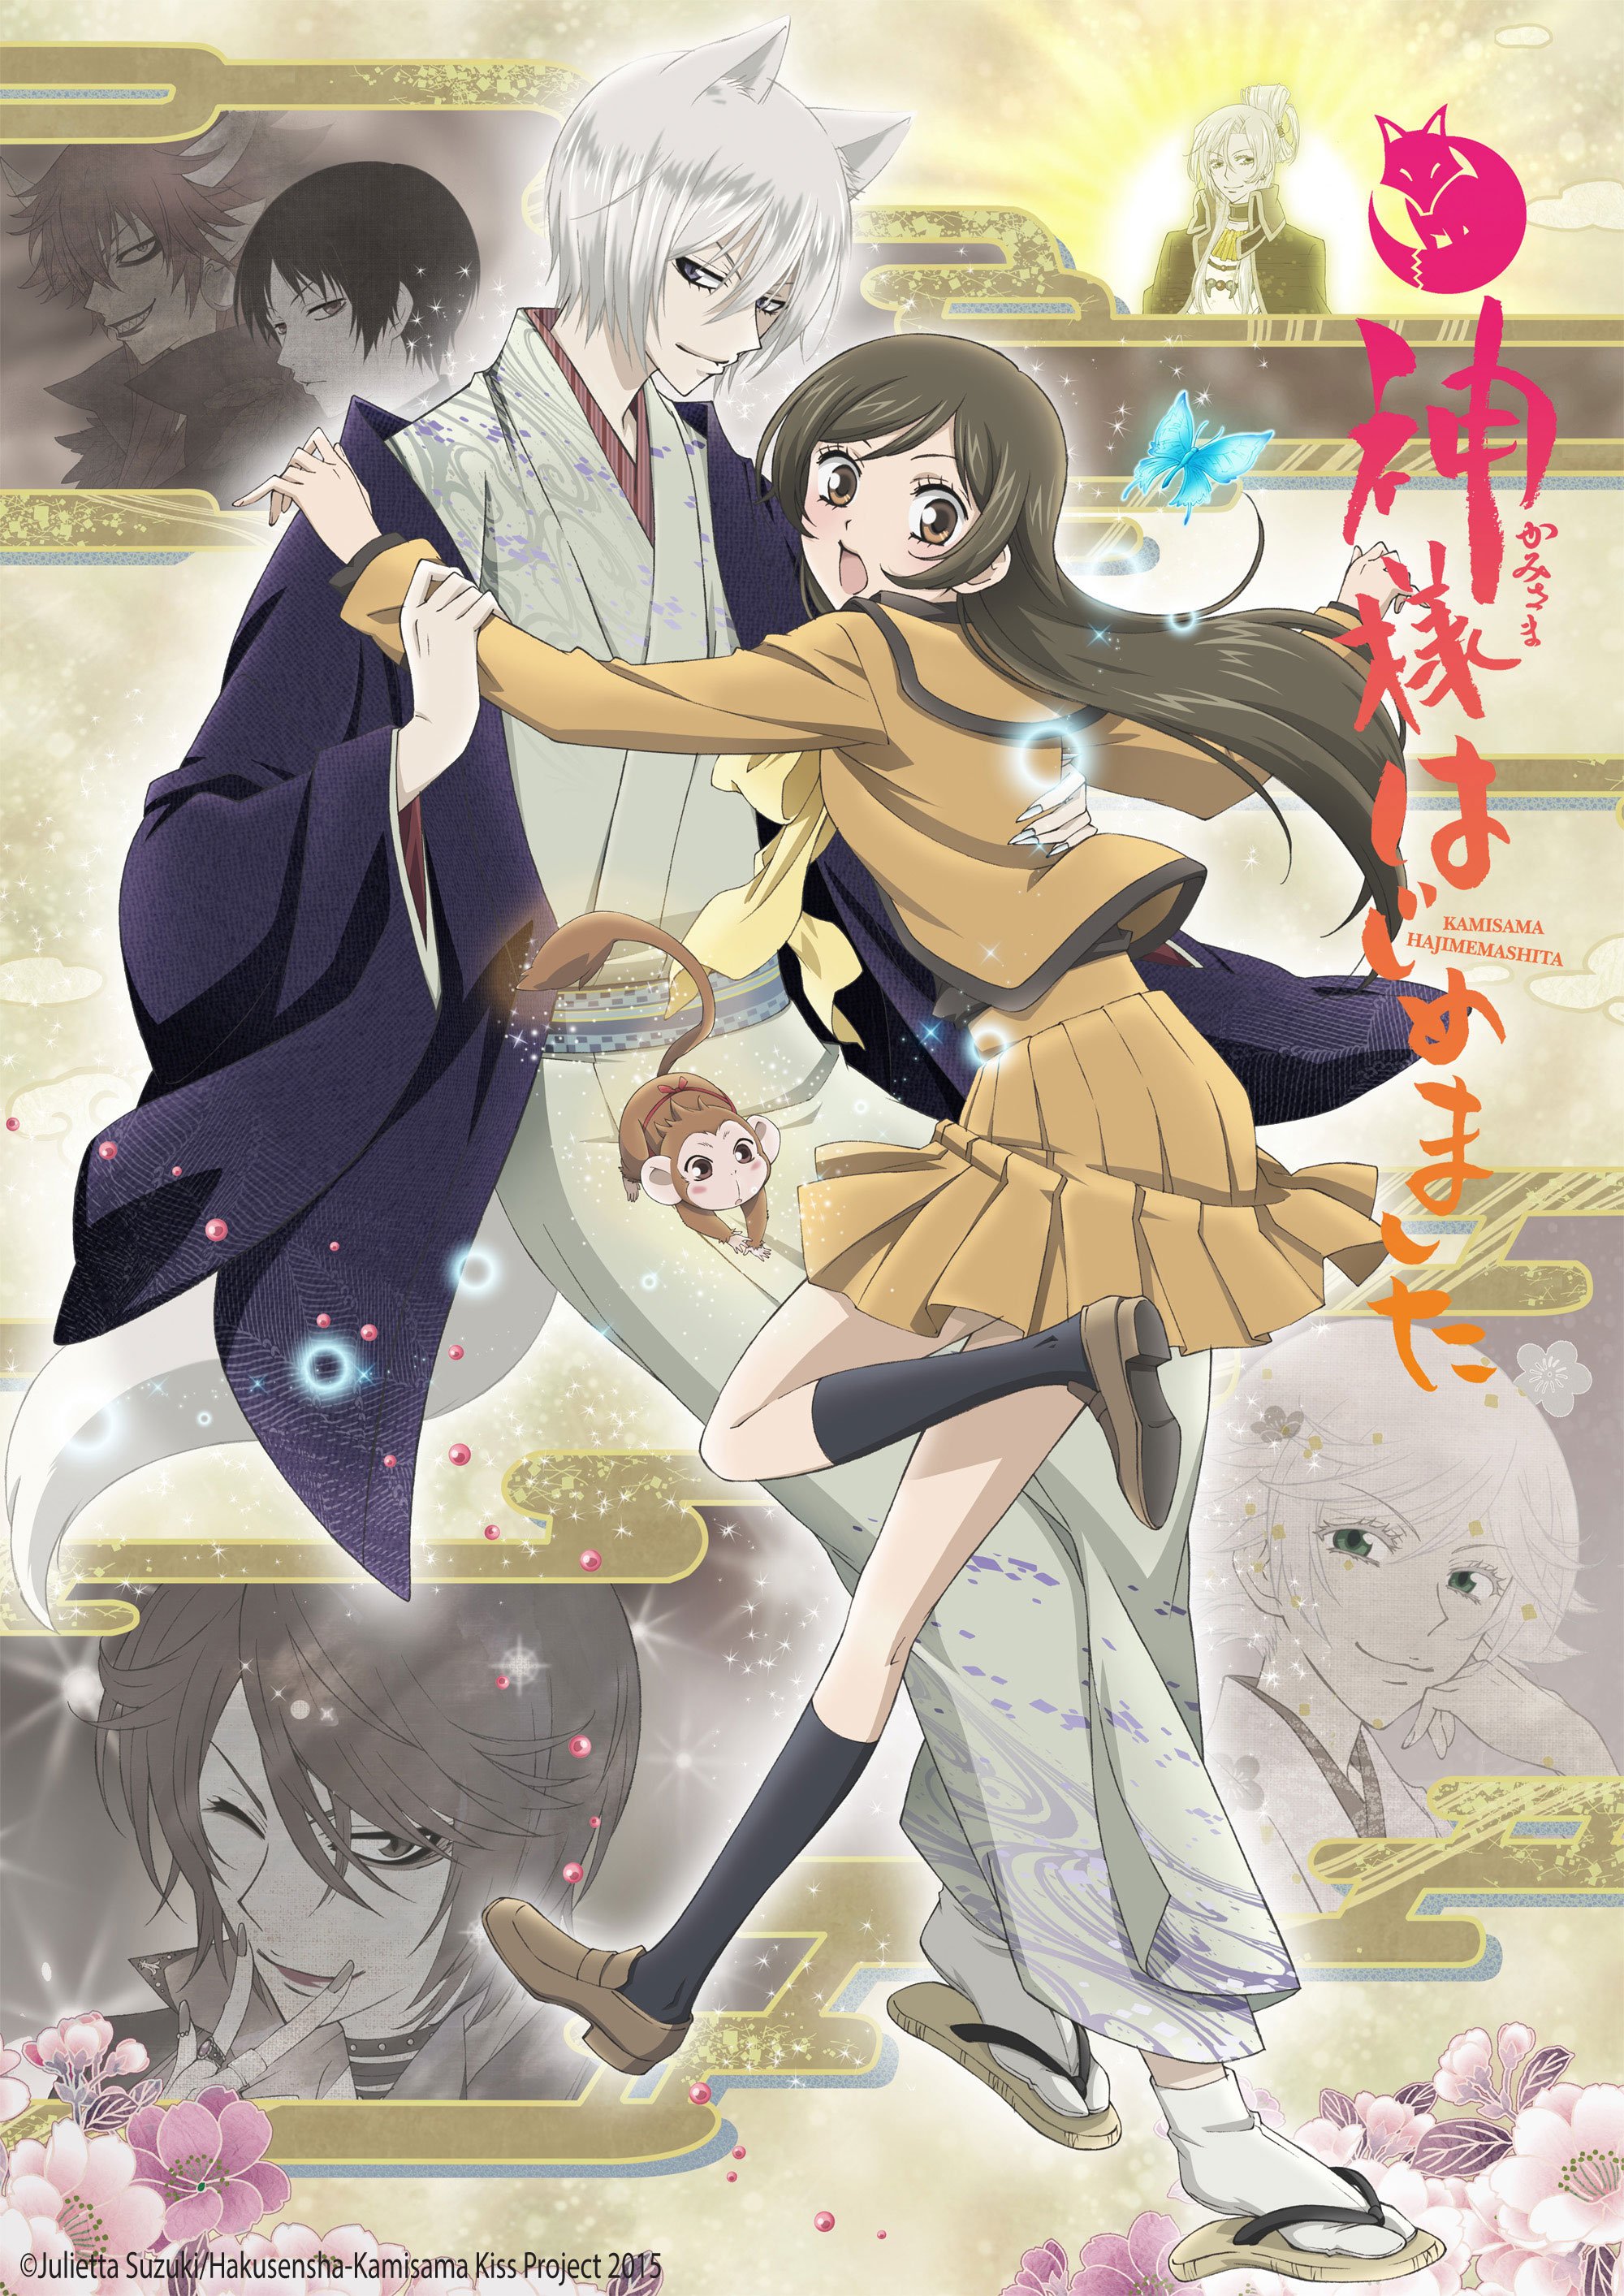 Anime Spotlight - Kamisama Kiss (Kamisama Hajimemashita) (2nd Season